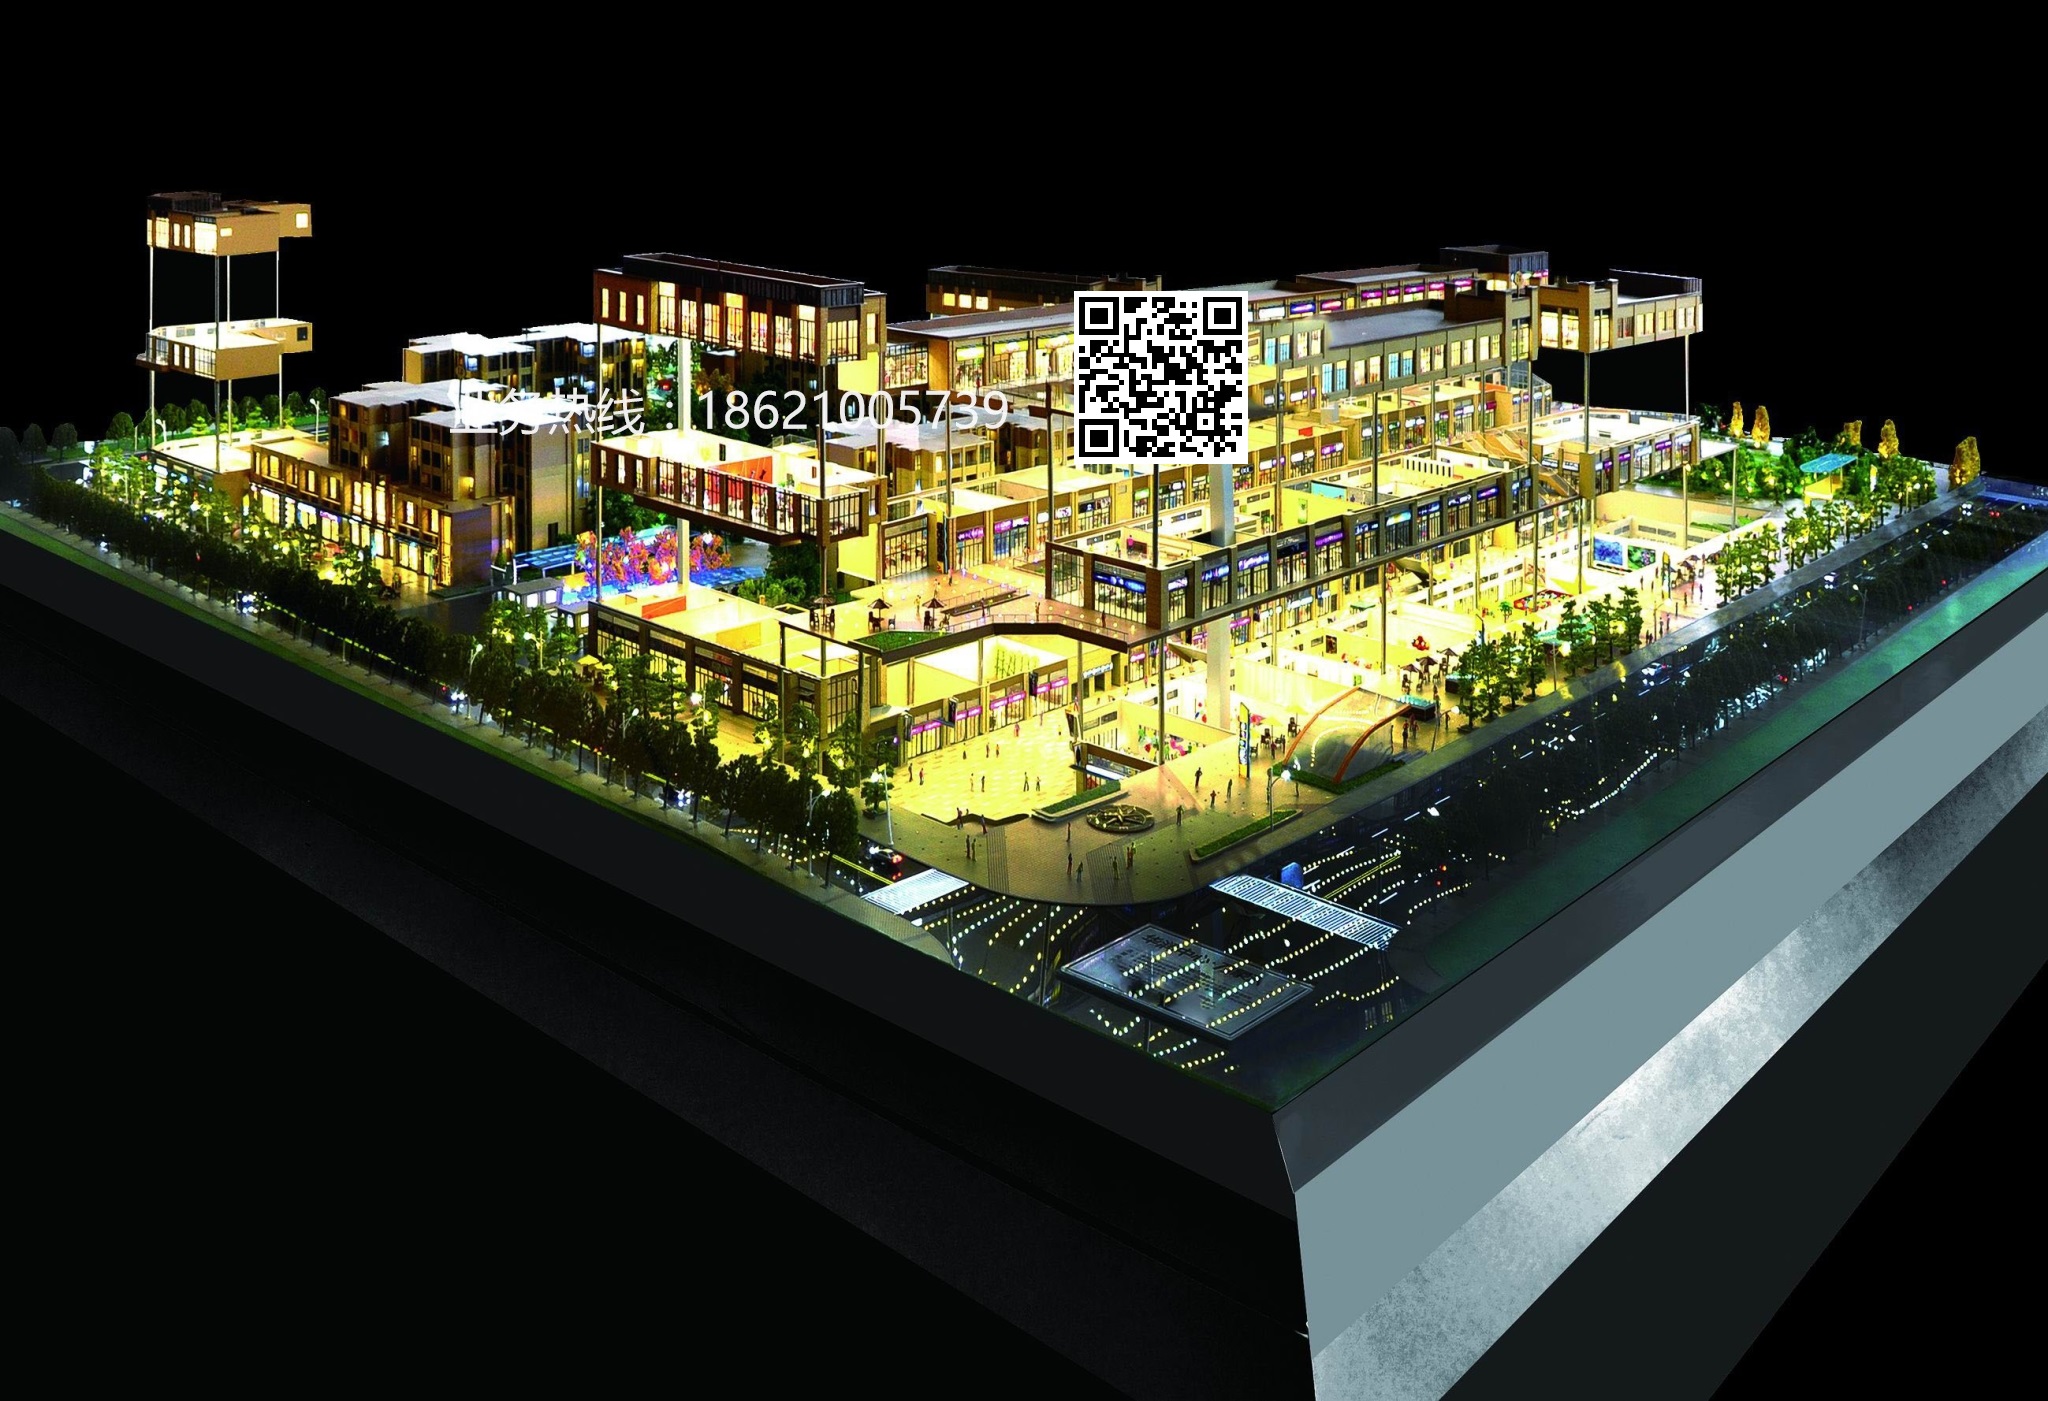 供应上海特色小镇沙盘模型公司-建筑模型制作-建筑模型价格-上海尼柯沙盘模型公司报价